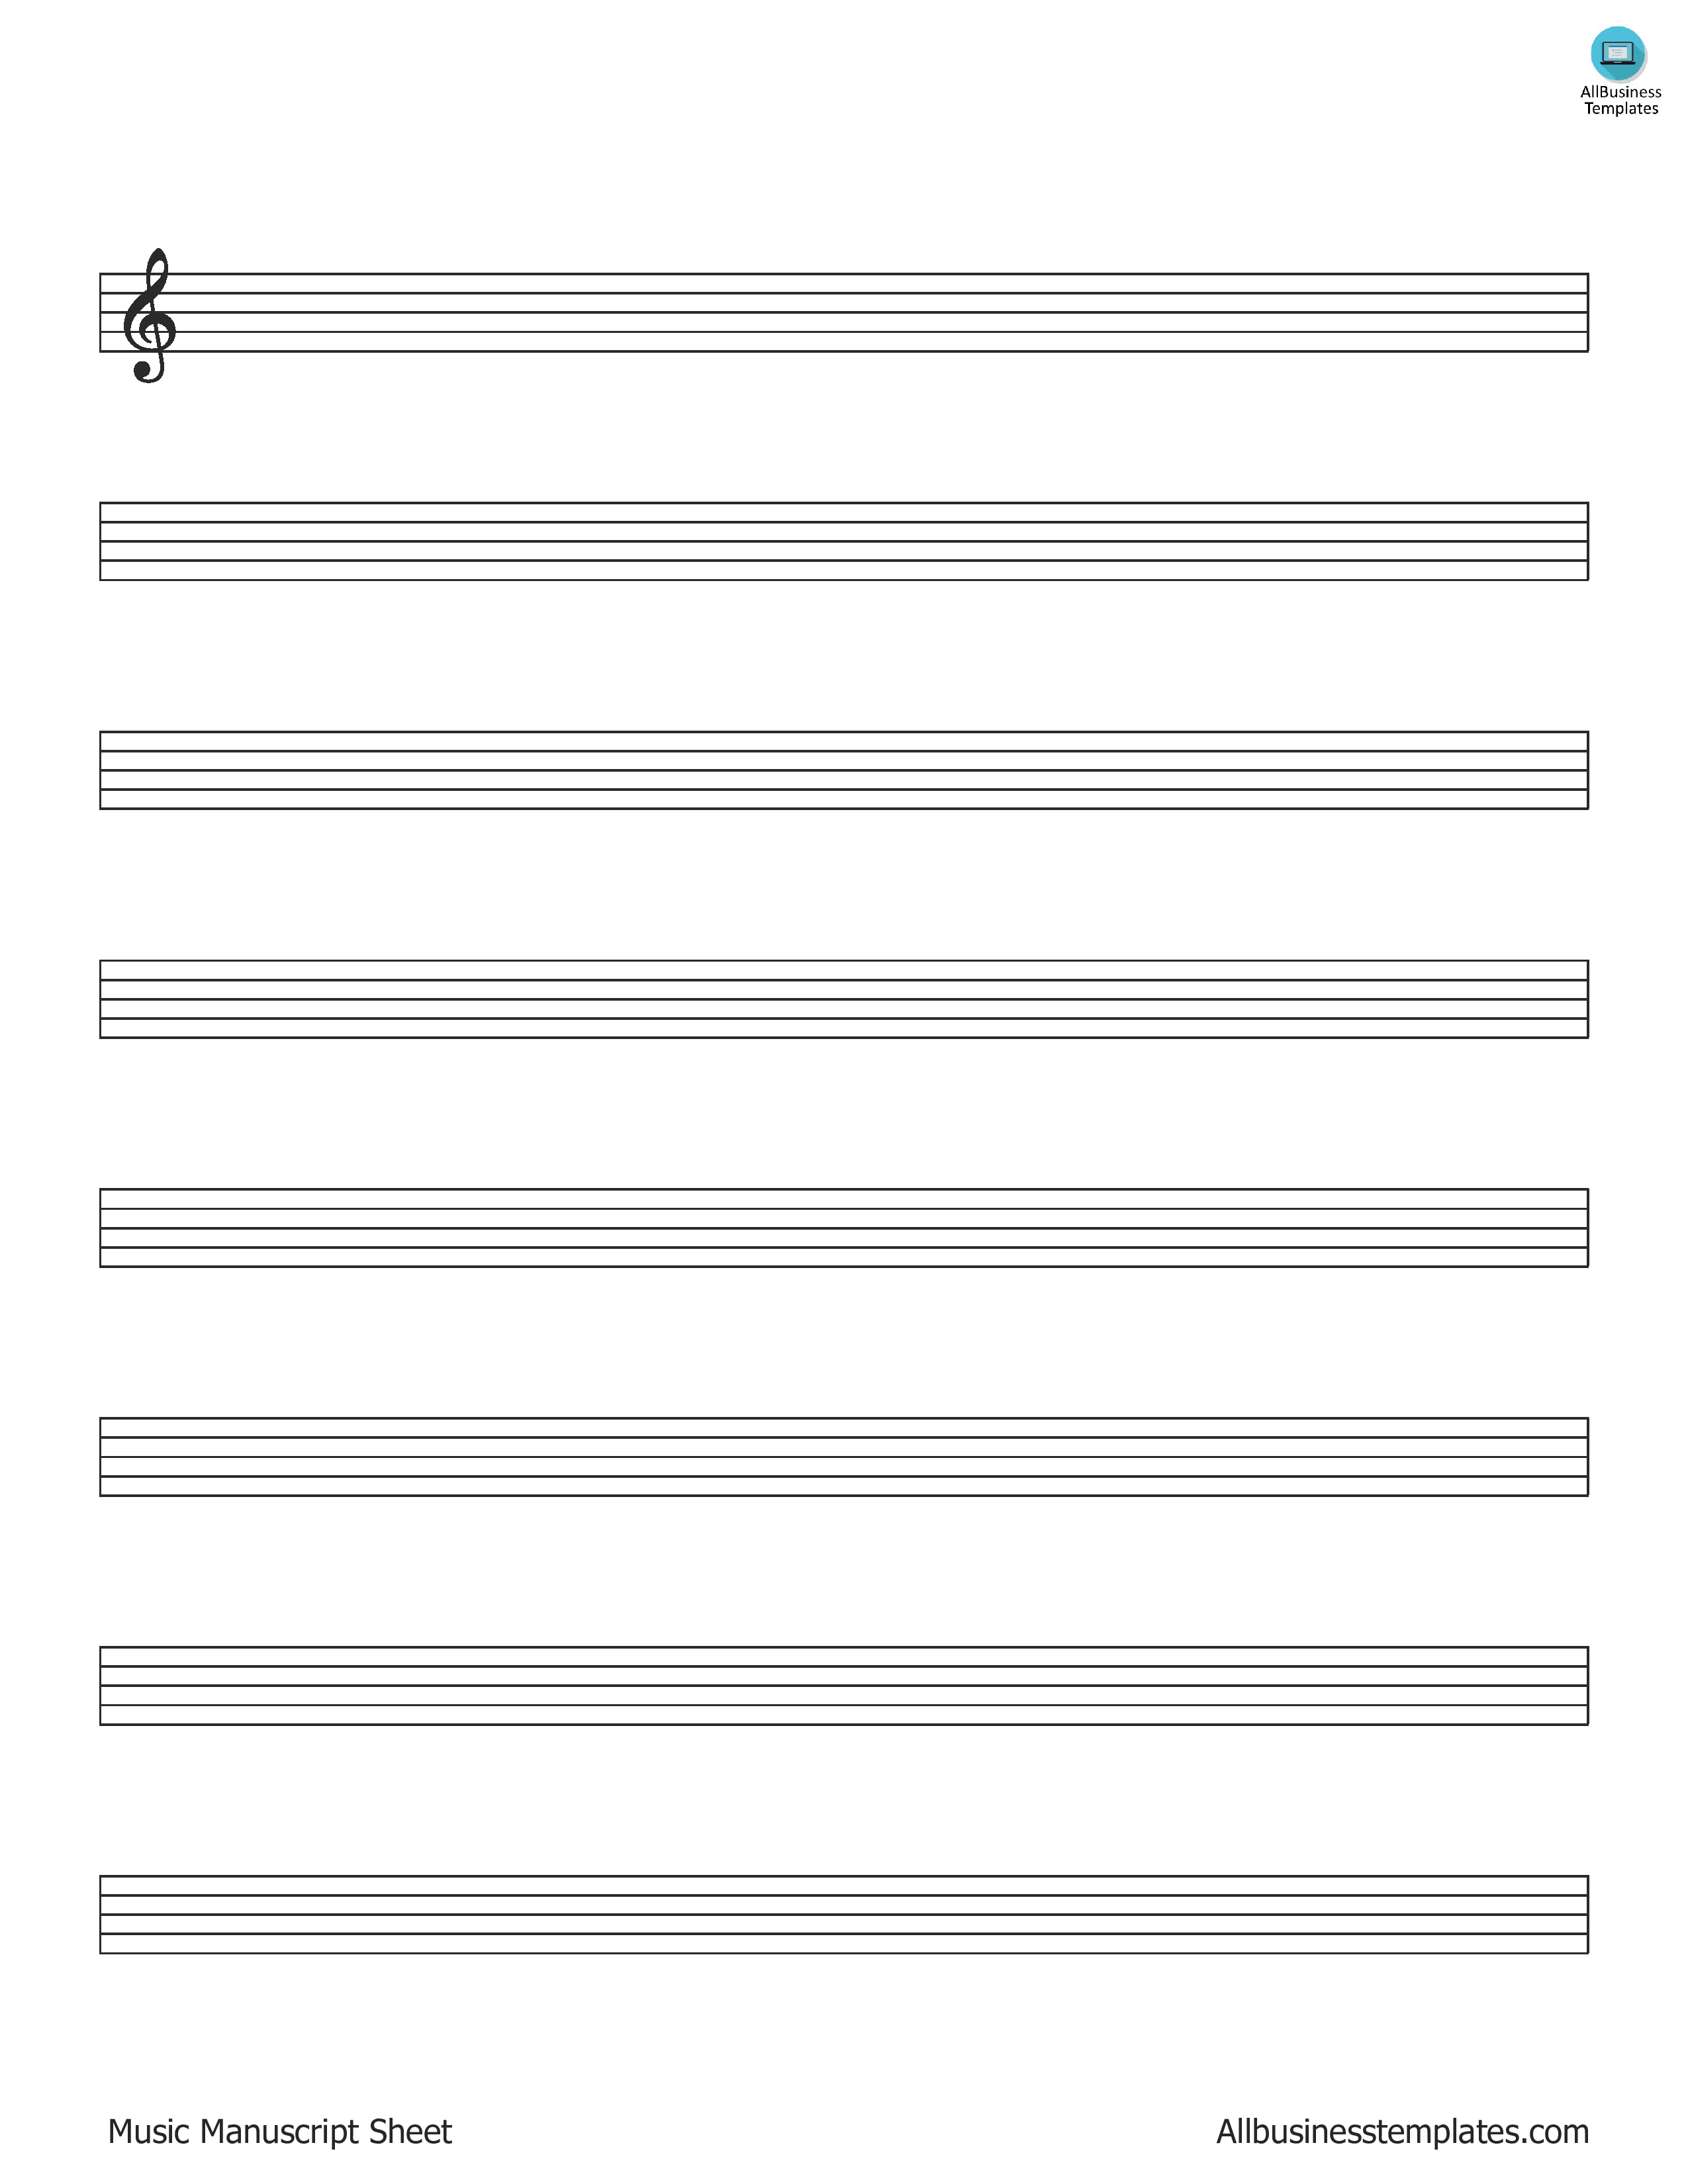 Music Manuscript Paper main image